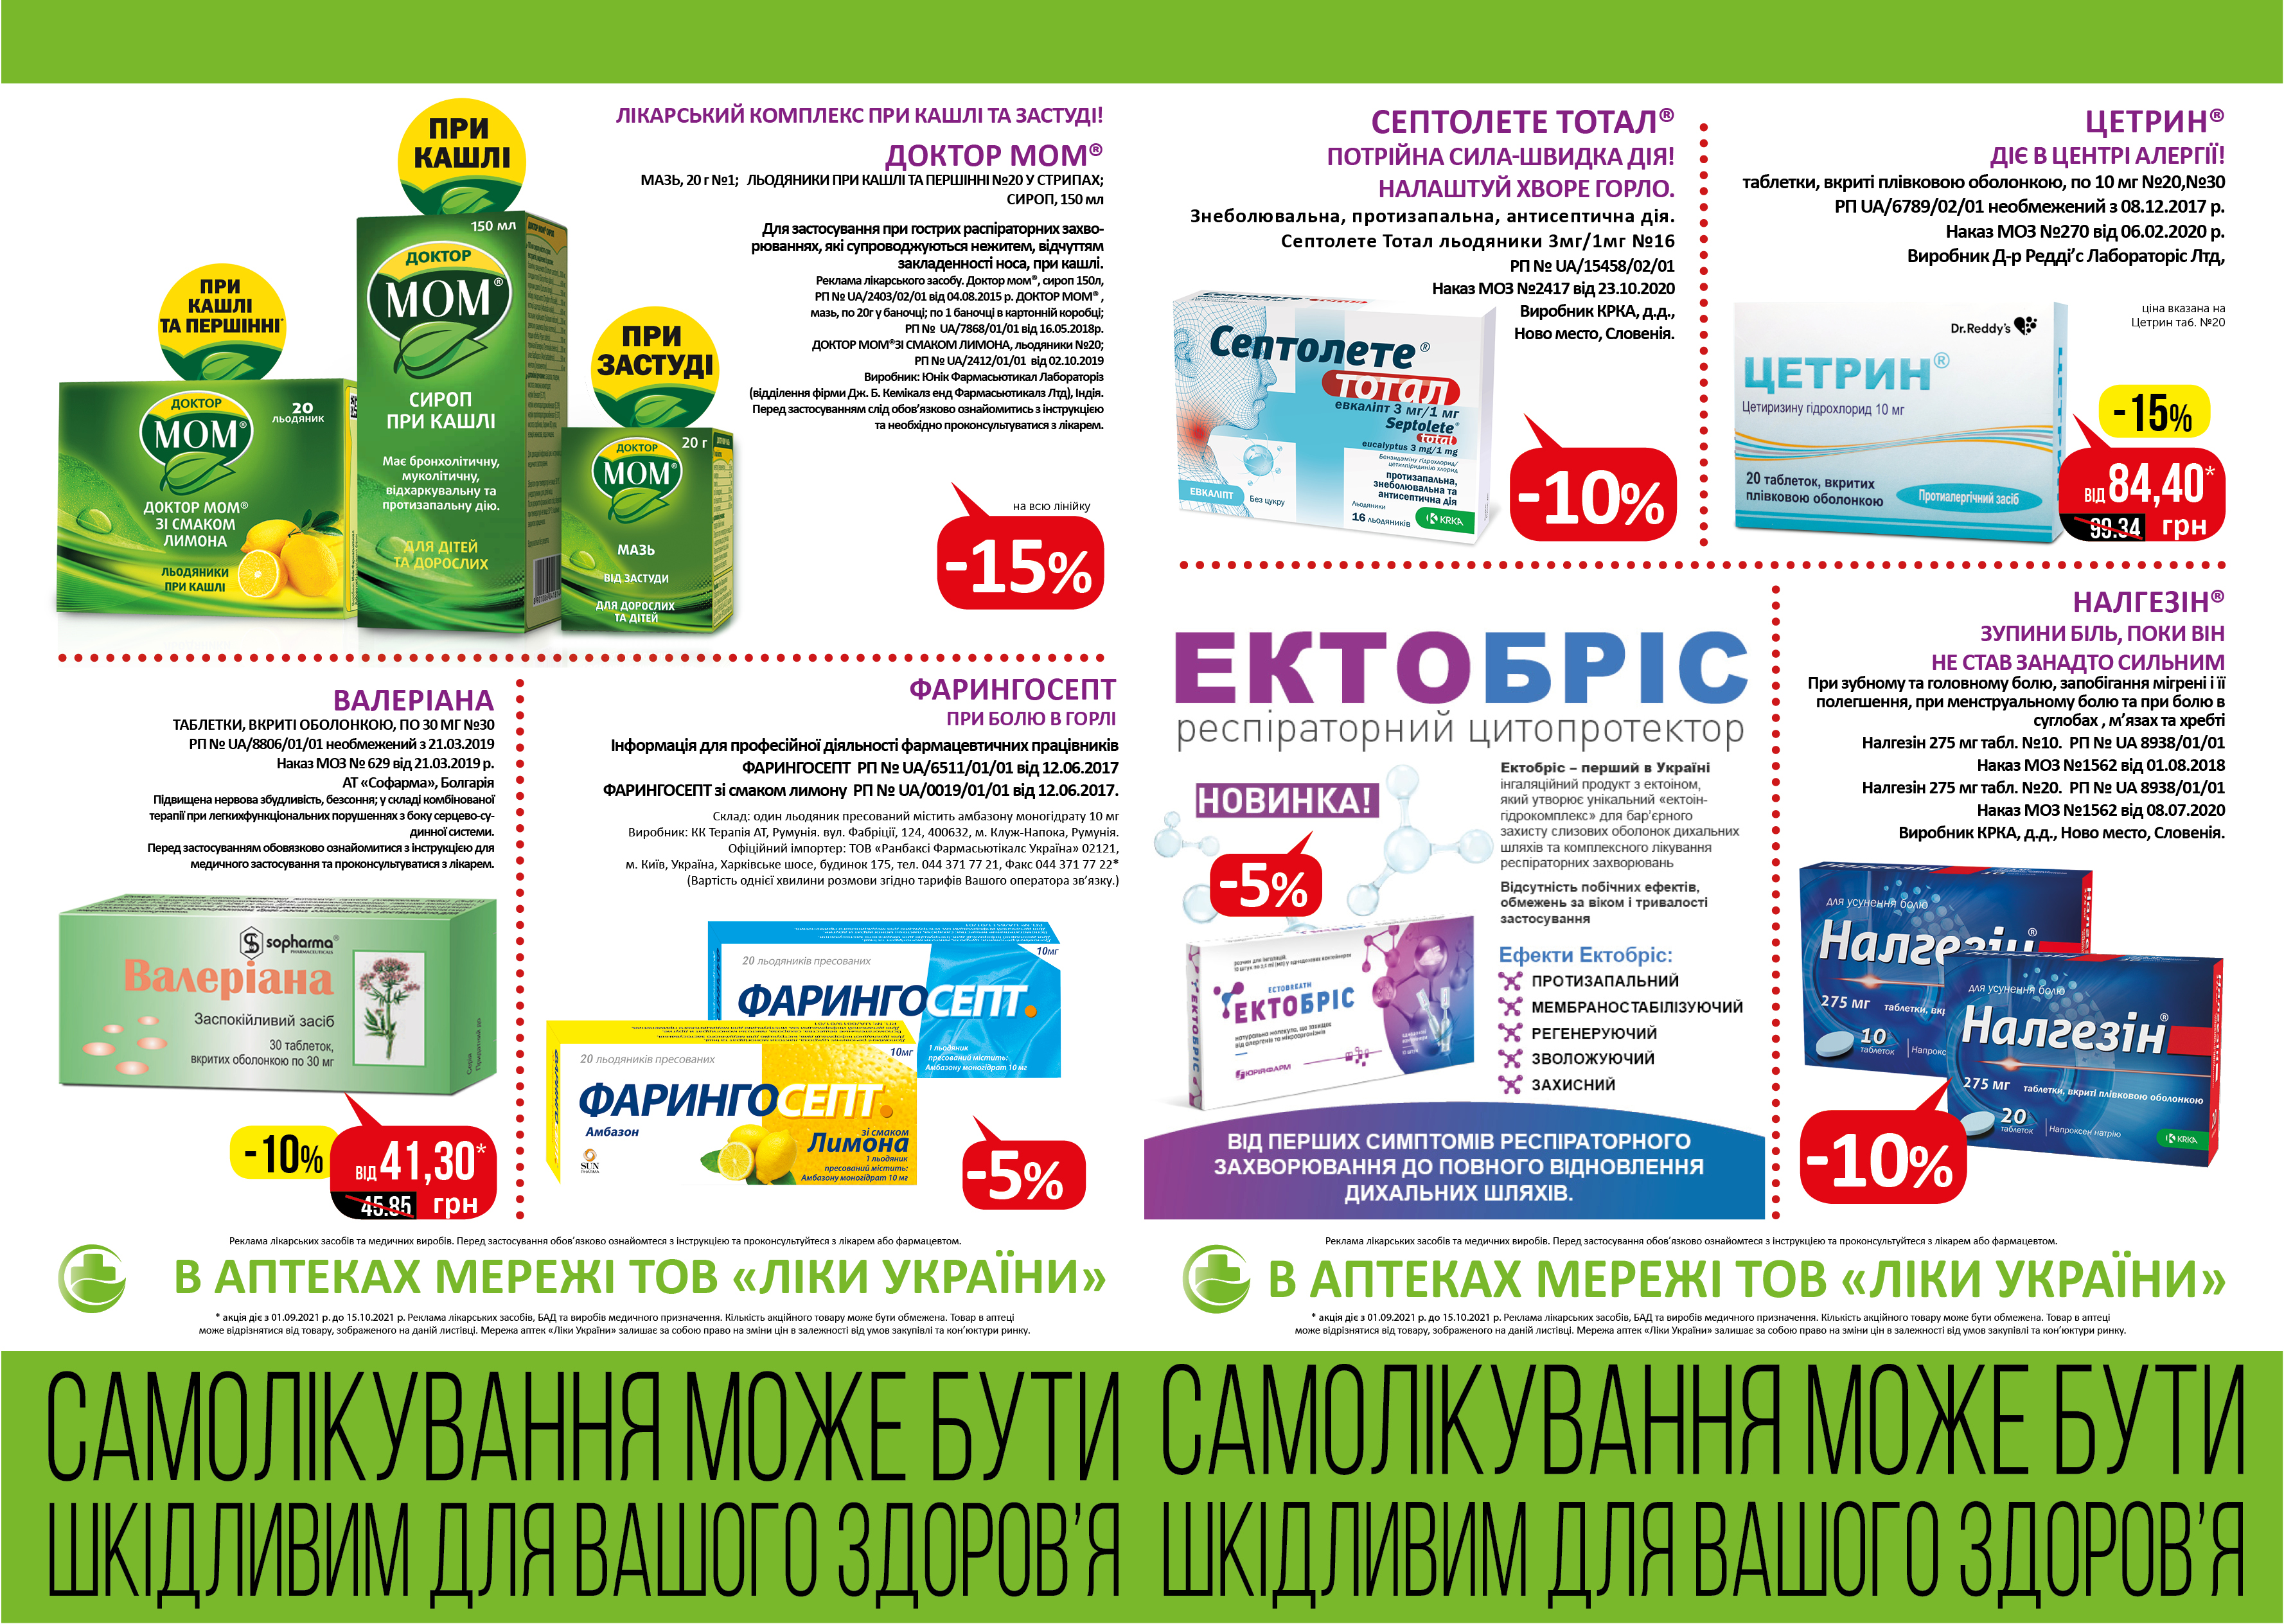 В аптеках мережі ТОВ "Ліки України" з 01.09 по 15.10 діє акція.